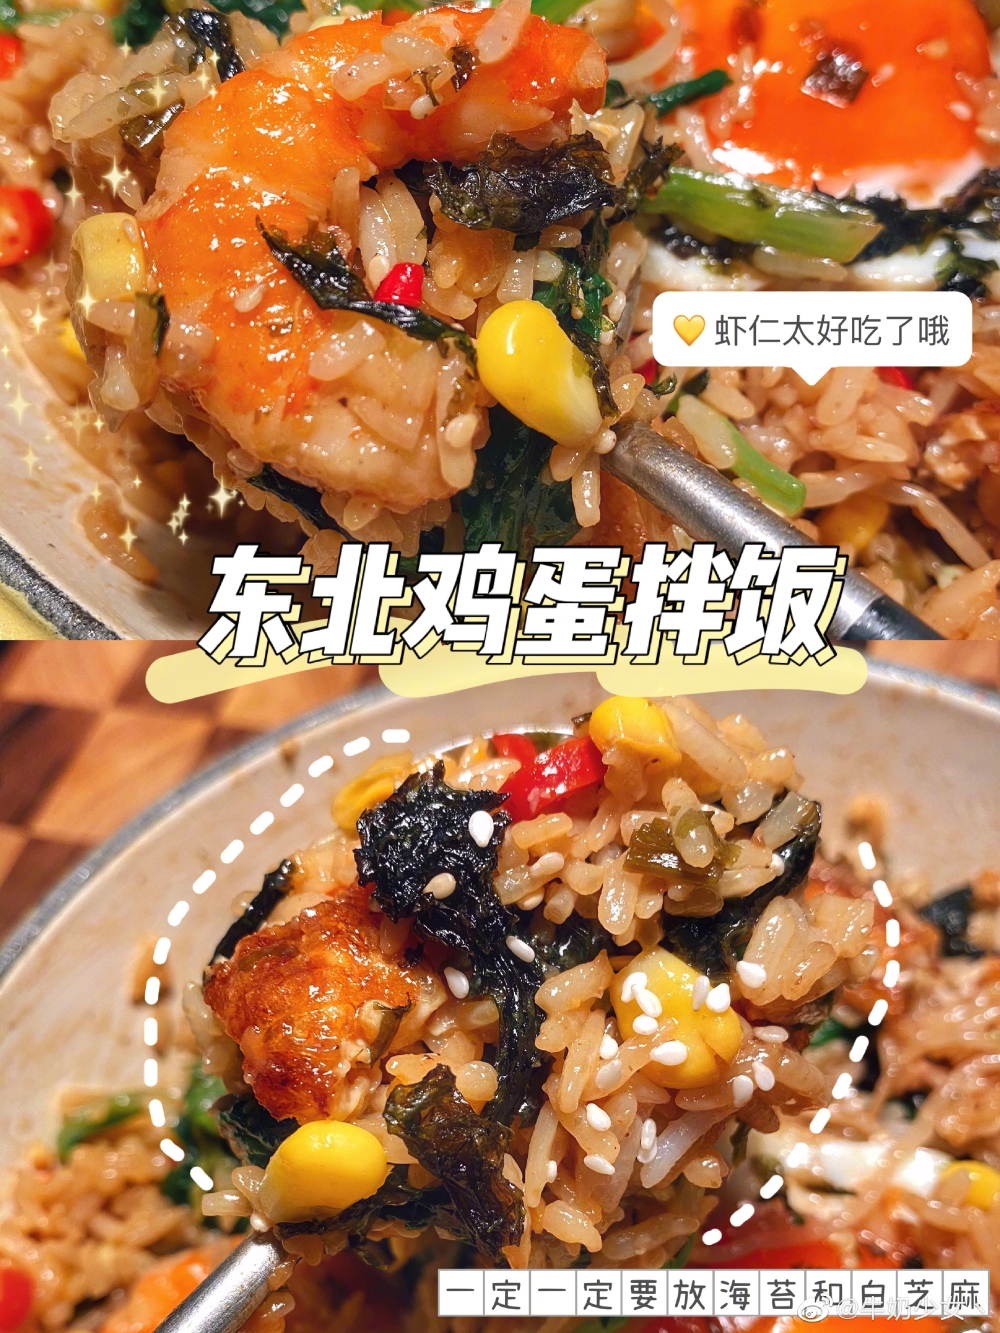 米饭炒饭焖饭拌饭焗饭各种饭的封面